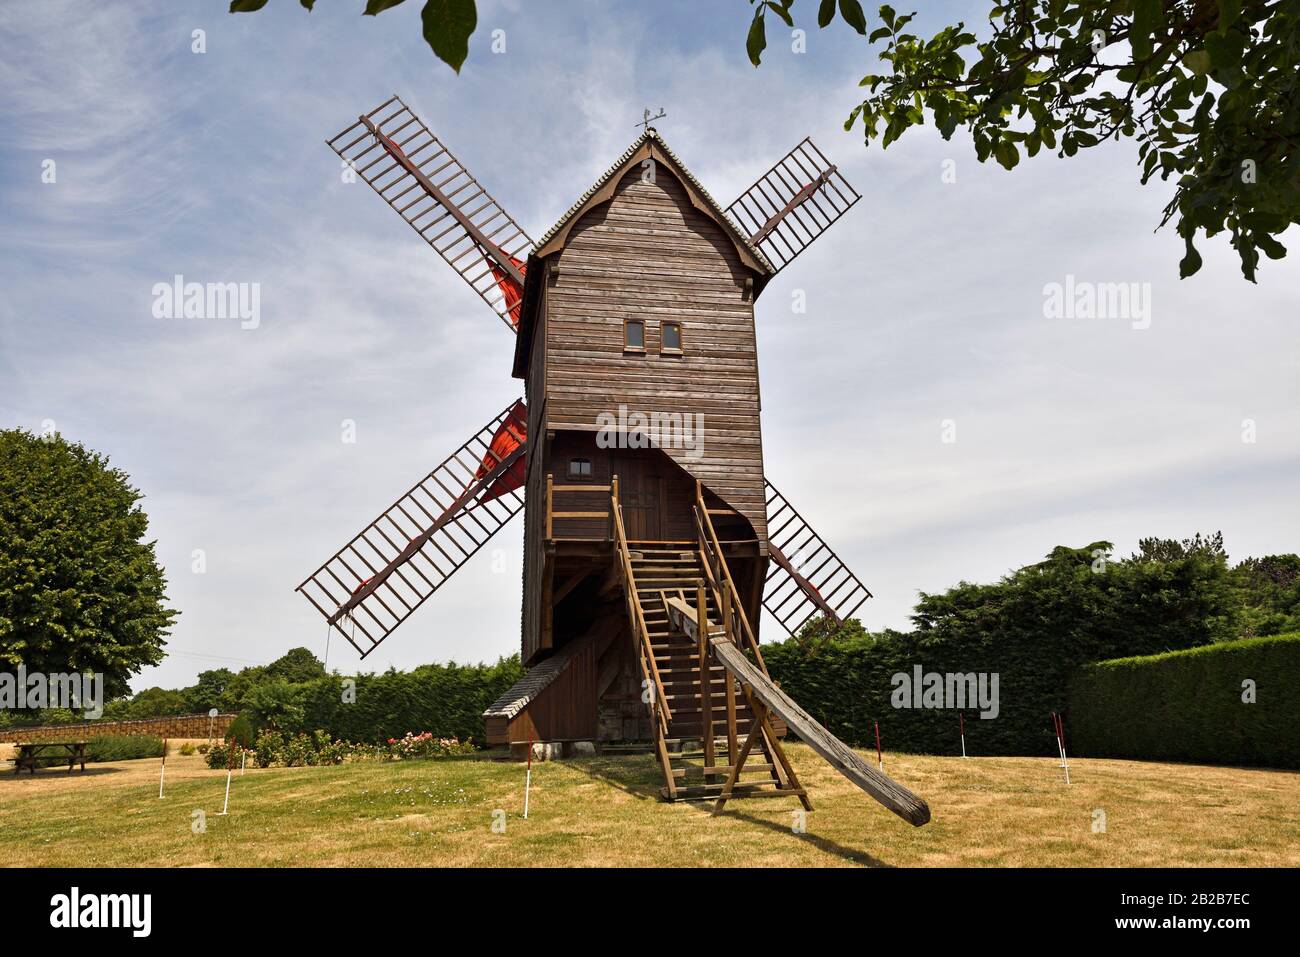 Moulin a vent Pelard a Bouville, departement Eure-et-Loir, region Centre-Val de Loire, France, Europe/Windmill called Pelard at Bouville, Beauce, Stock Photo